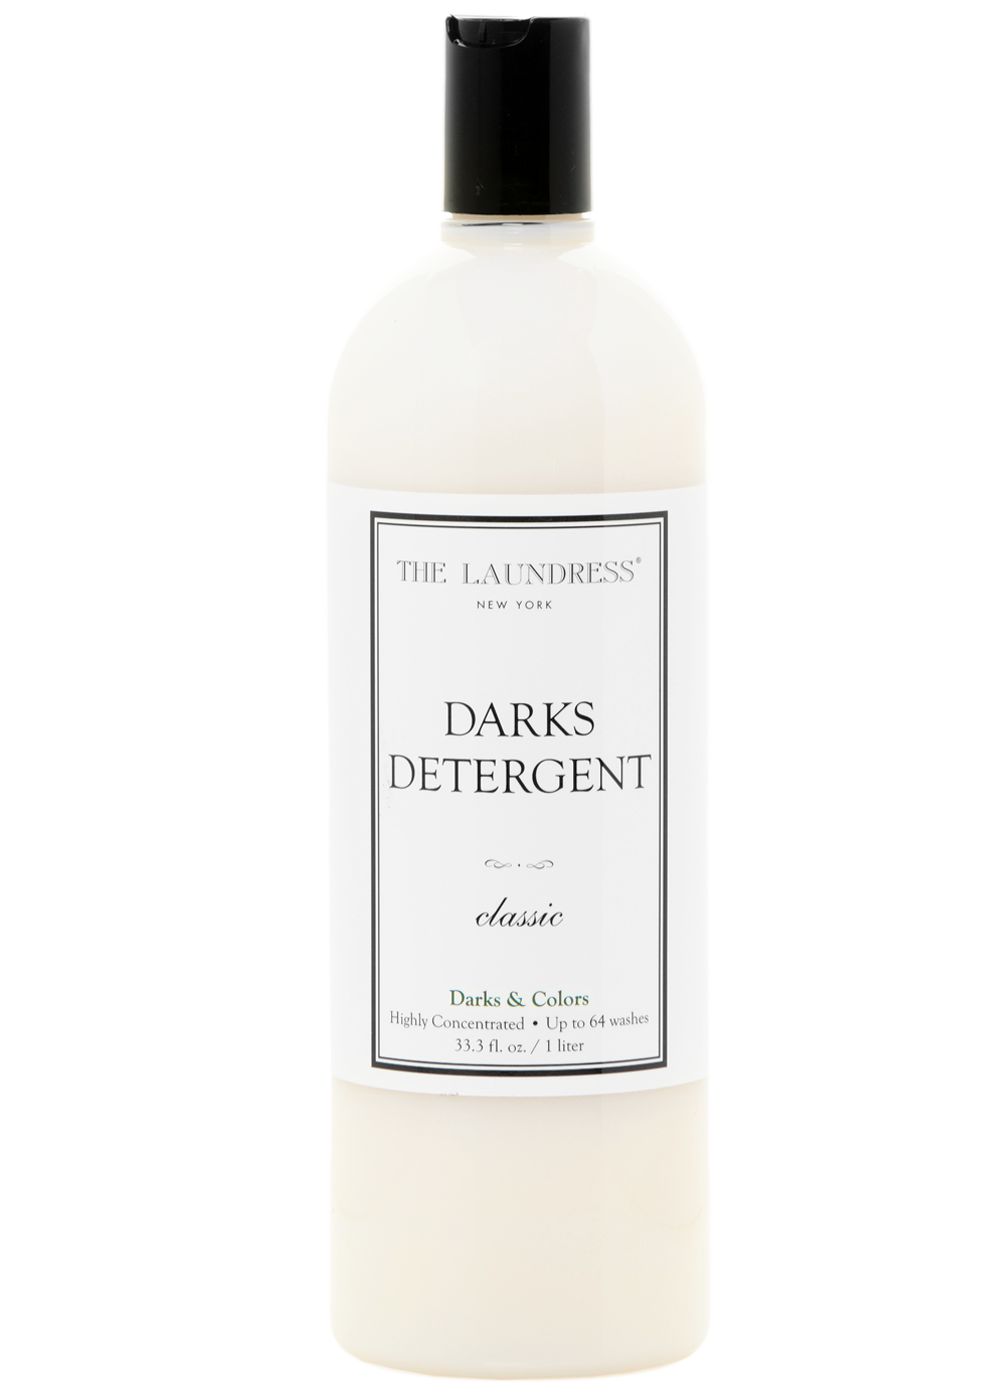 Darks Detergent | The Laundress